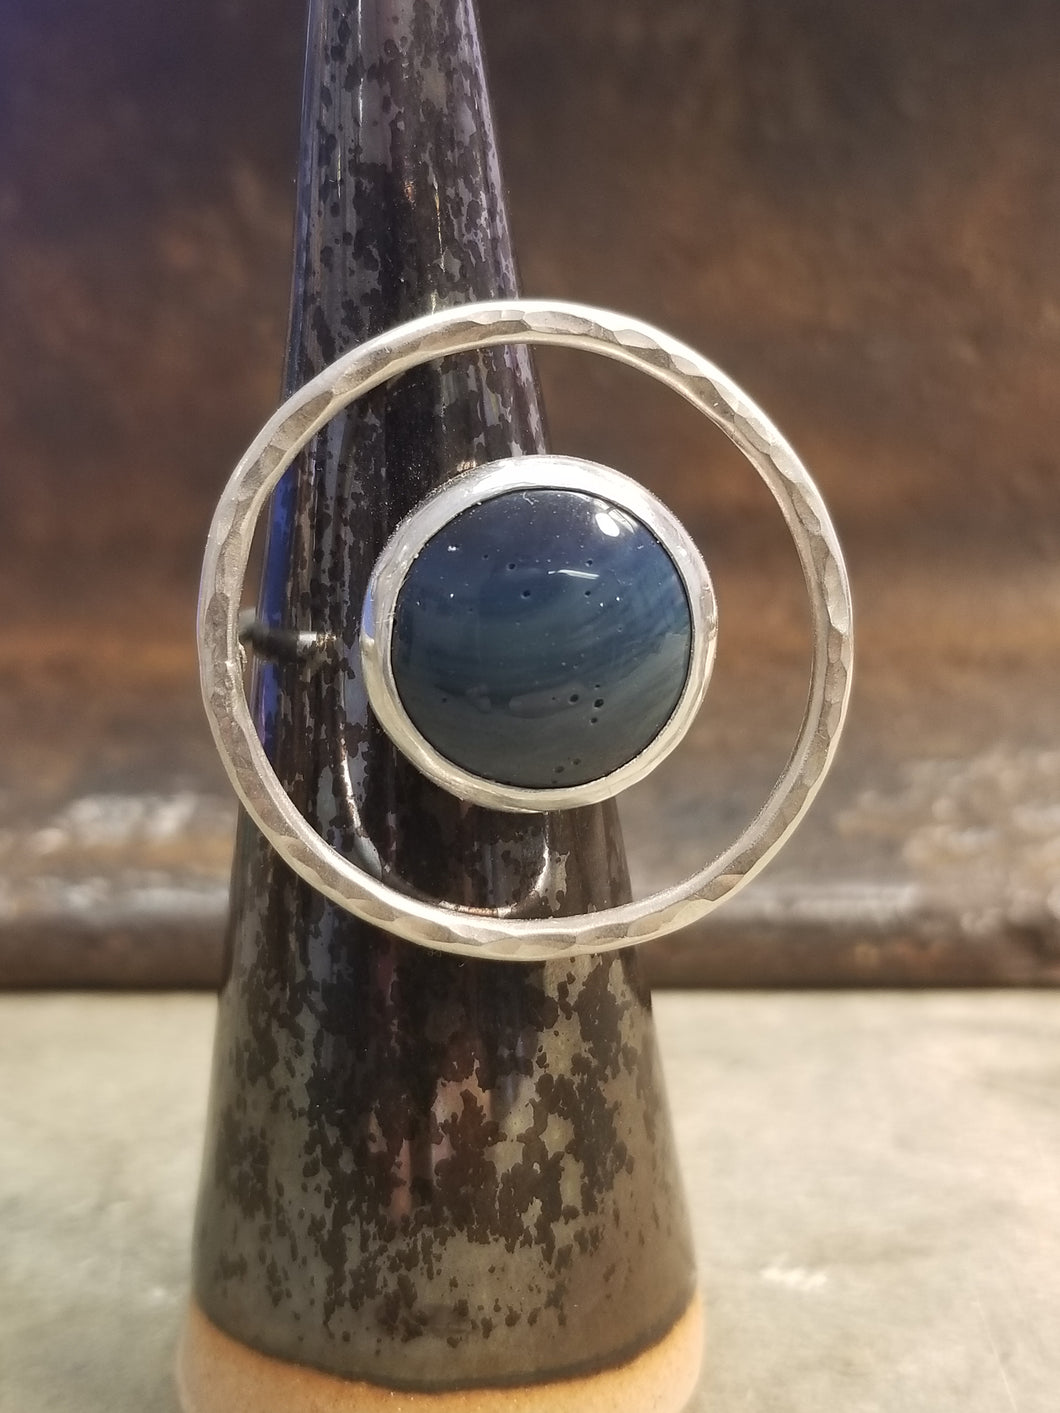 Leland Blue Floating Circle Ring